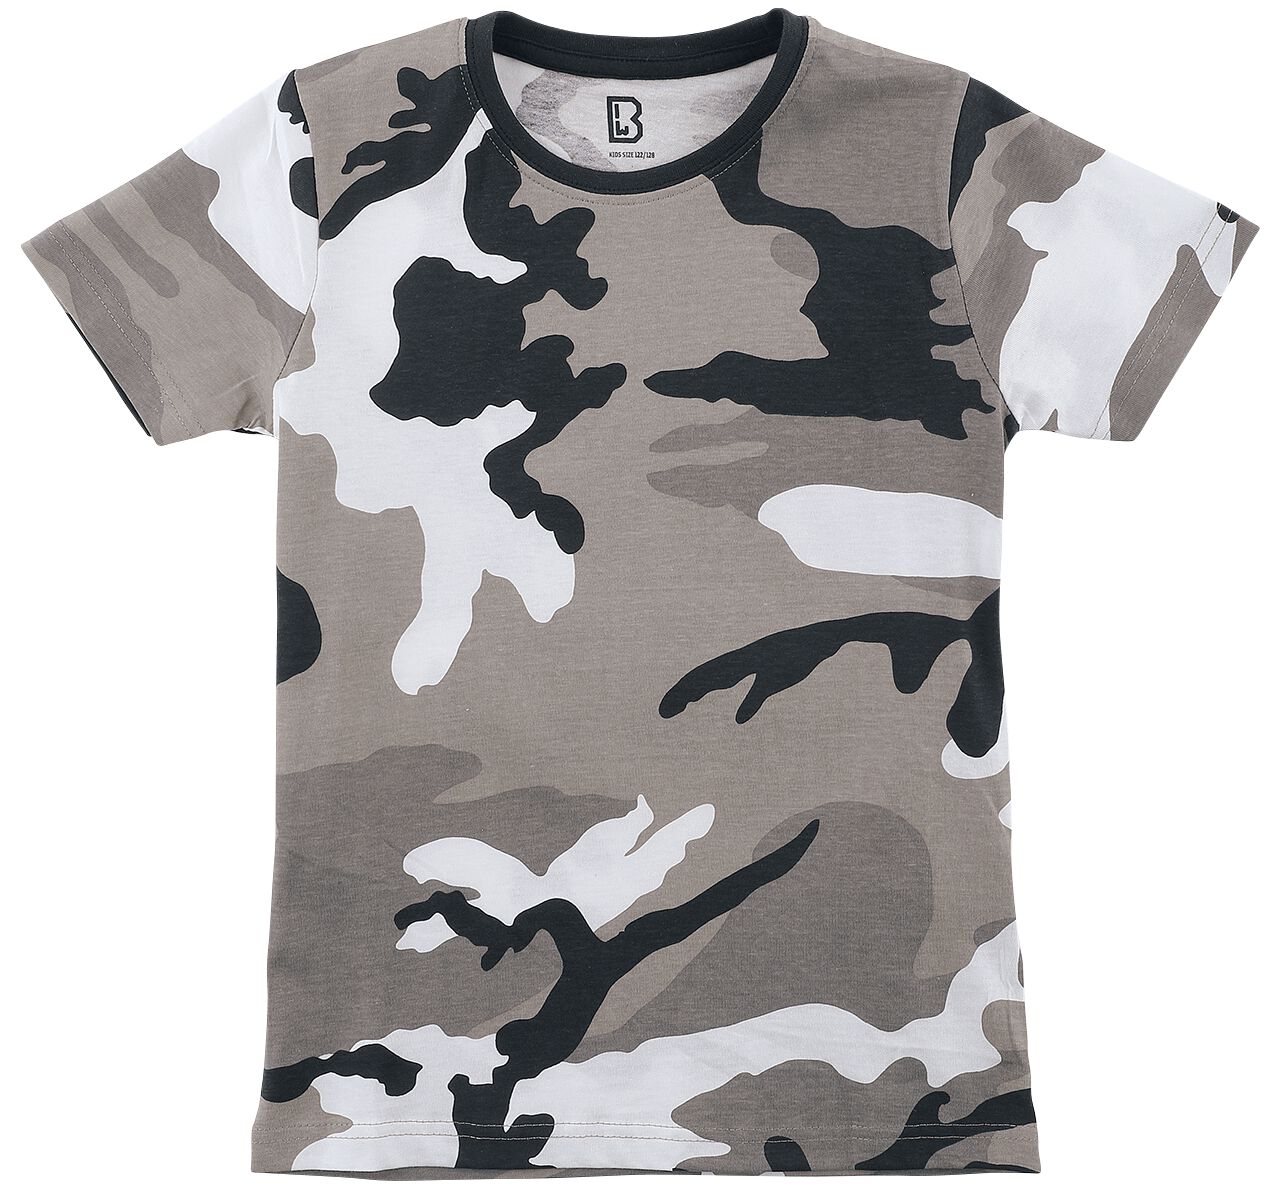 Brandit - Camouflage/Flecktarn T-Shirt - Kids T-Shirt - 122/128 bis 170/176 - für Jungen - Größe 170/176 - urban